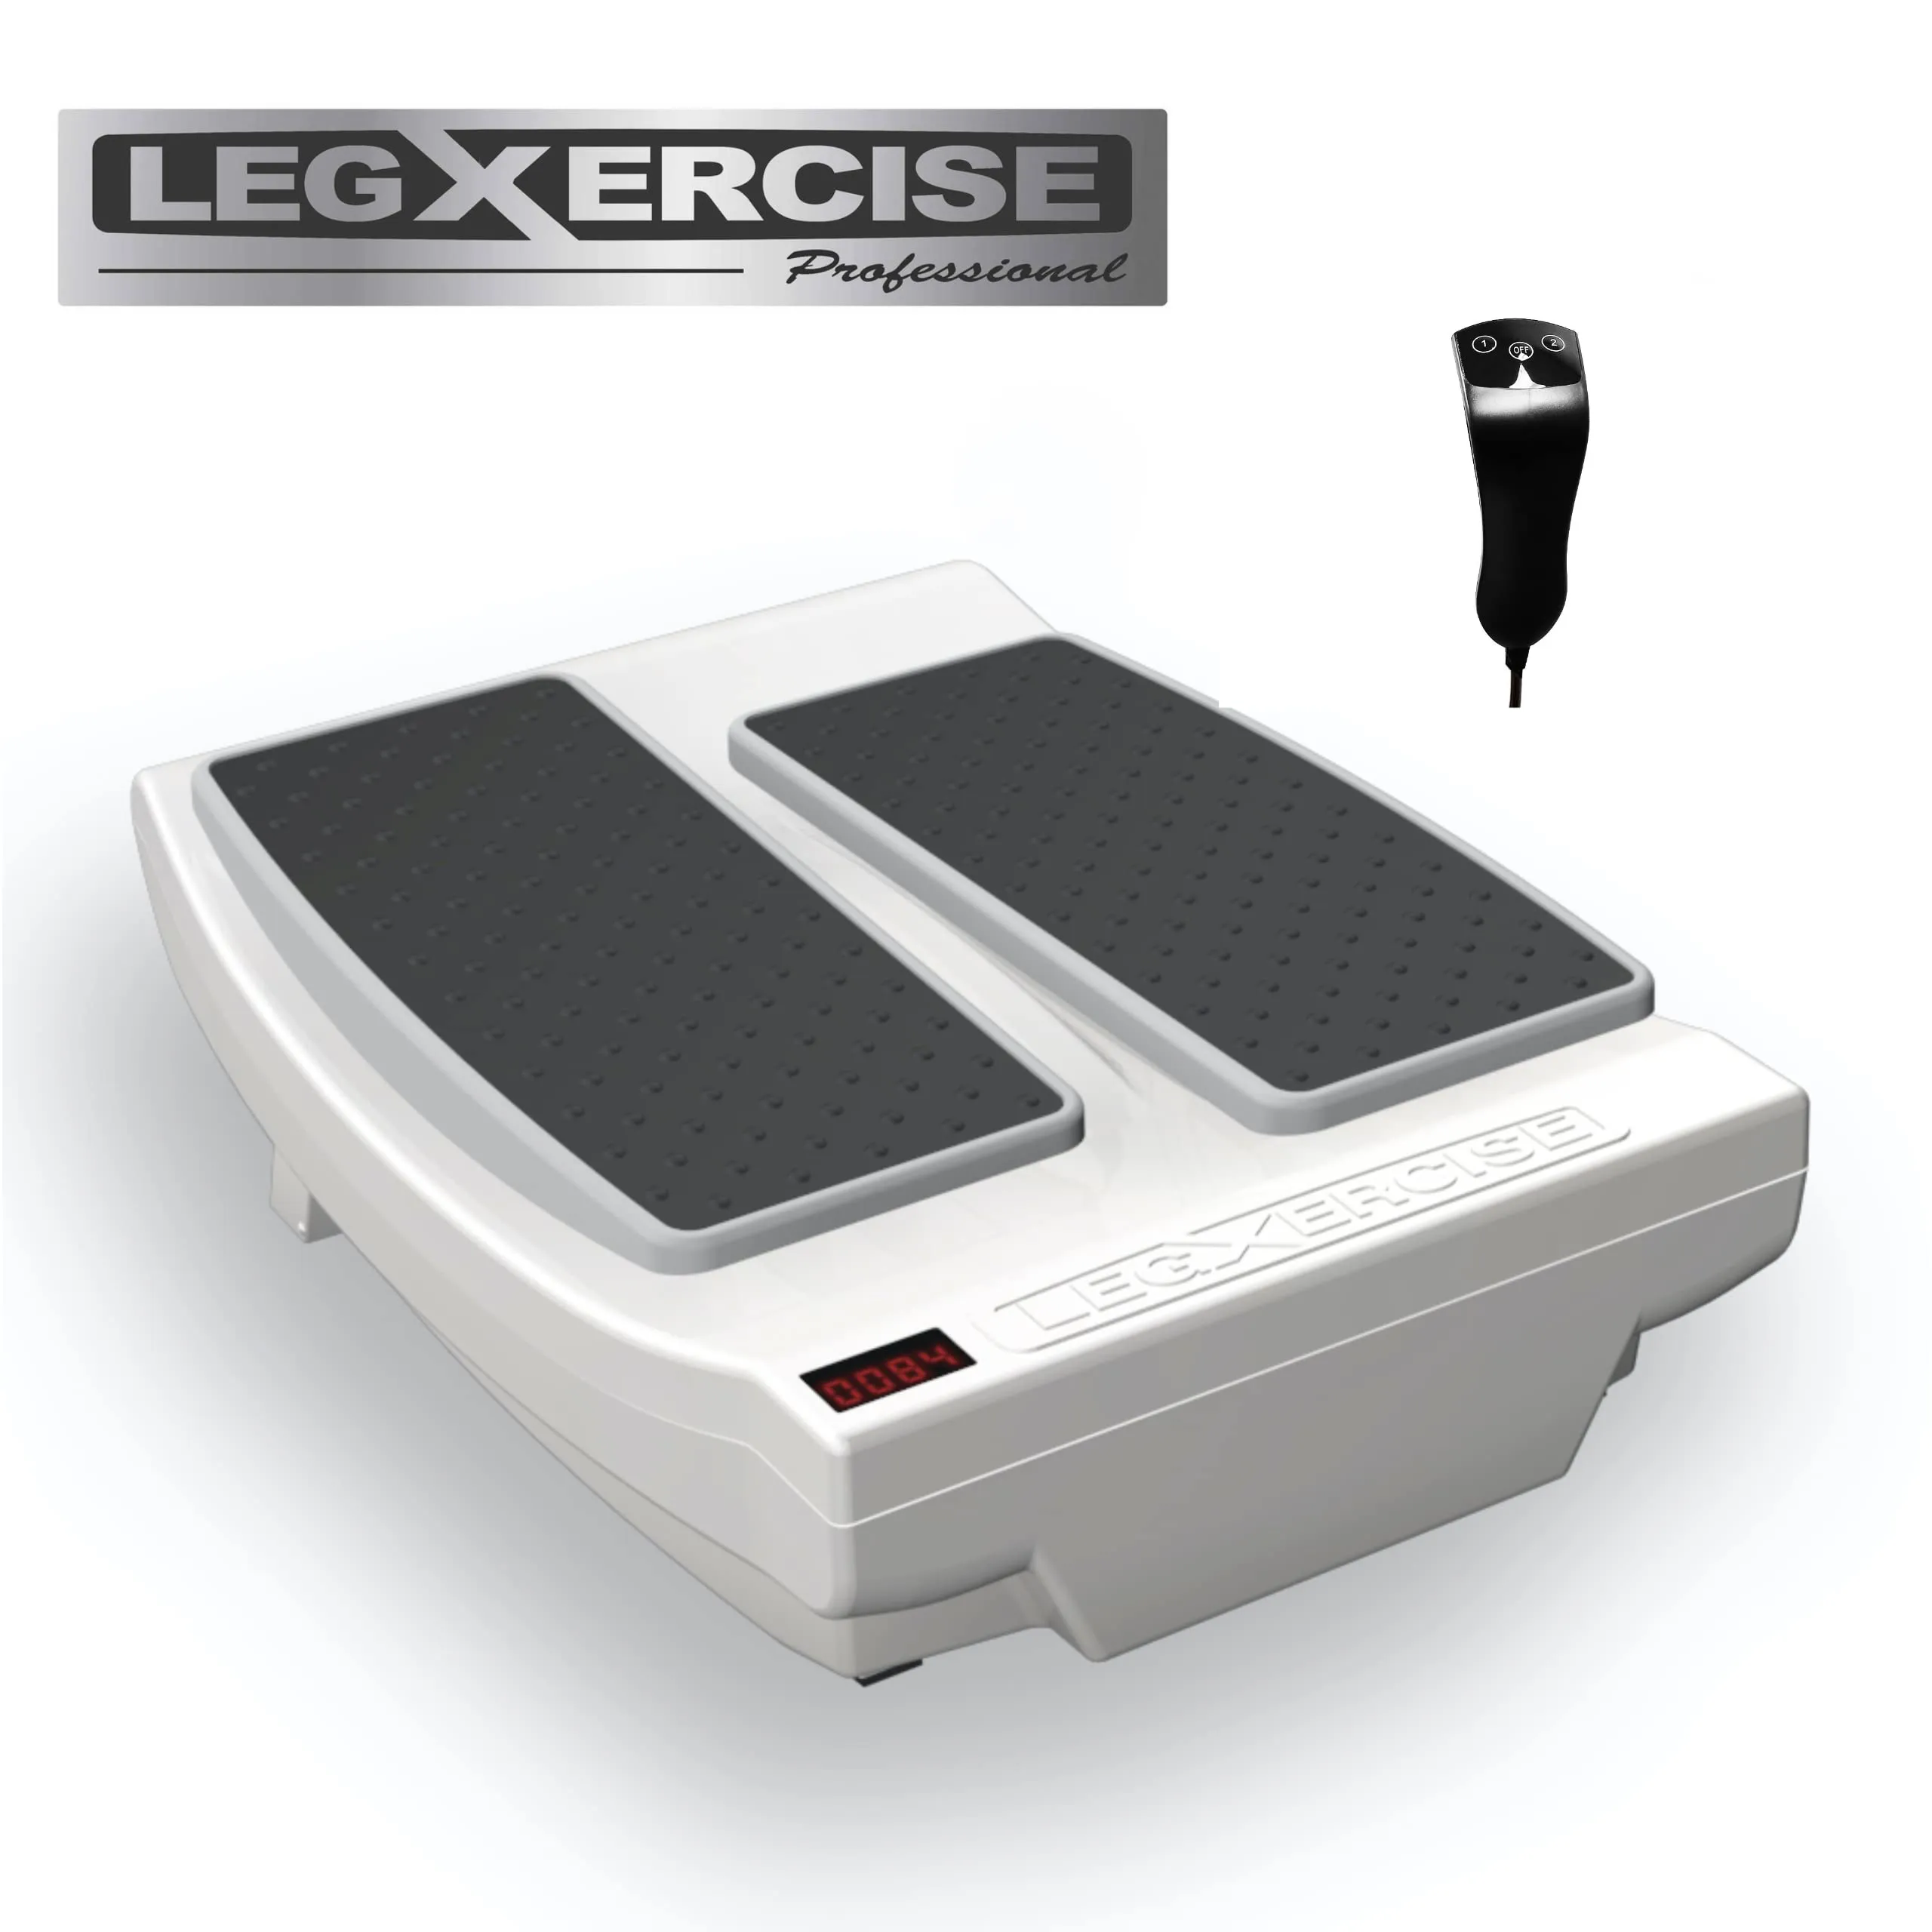 Legxercise Pro LEGX 012